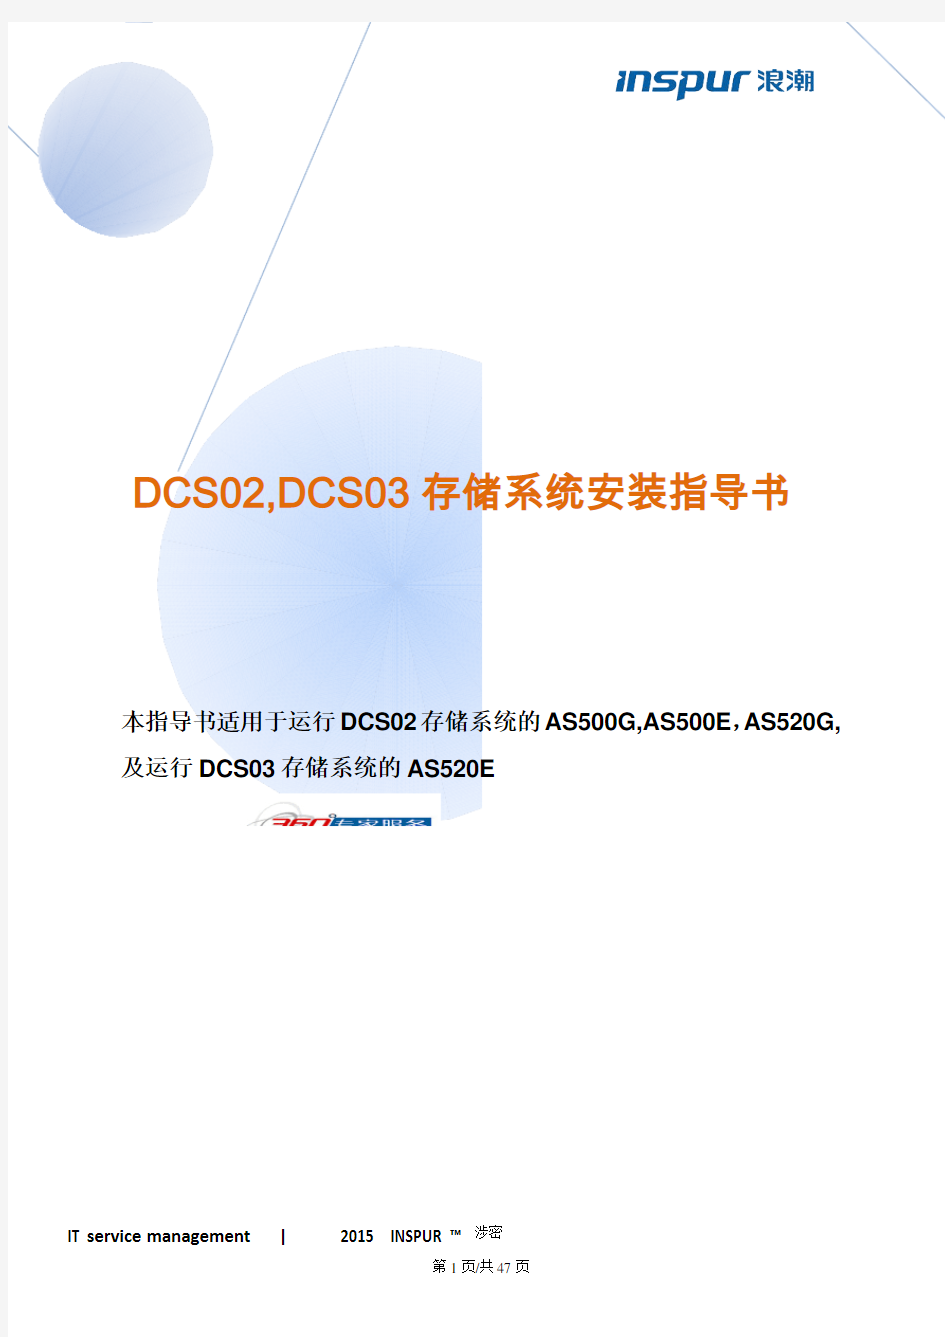 浪潮存储DCS02和DCS03系统产品安装指导书